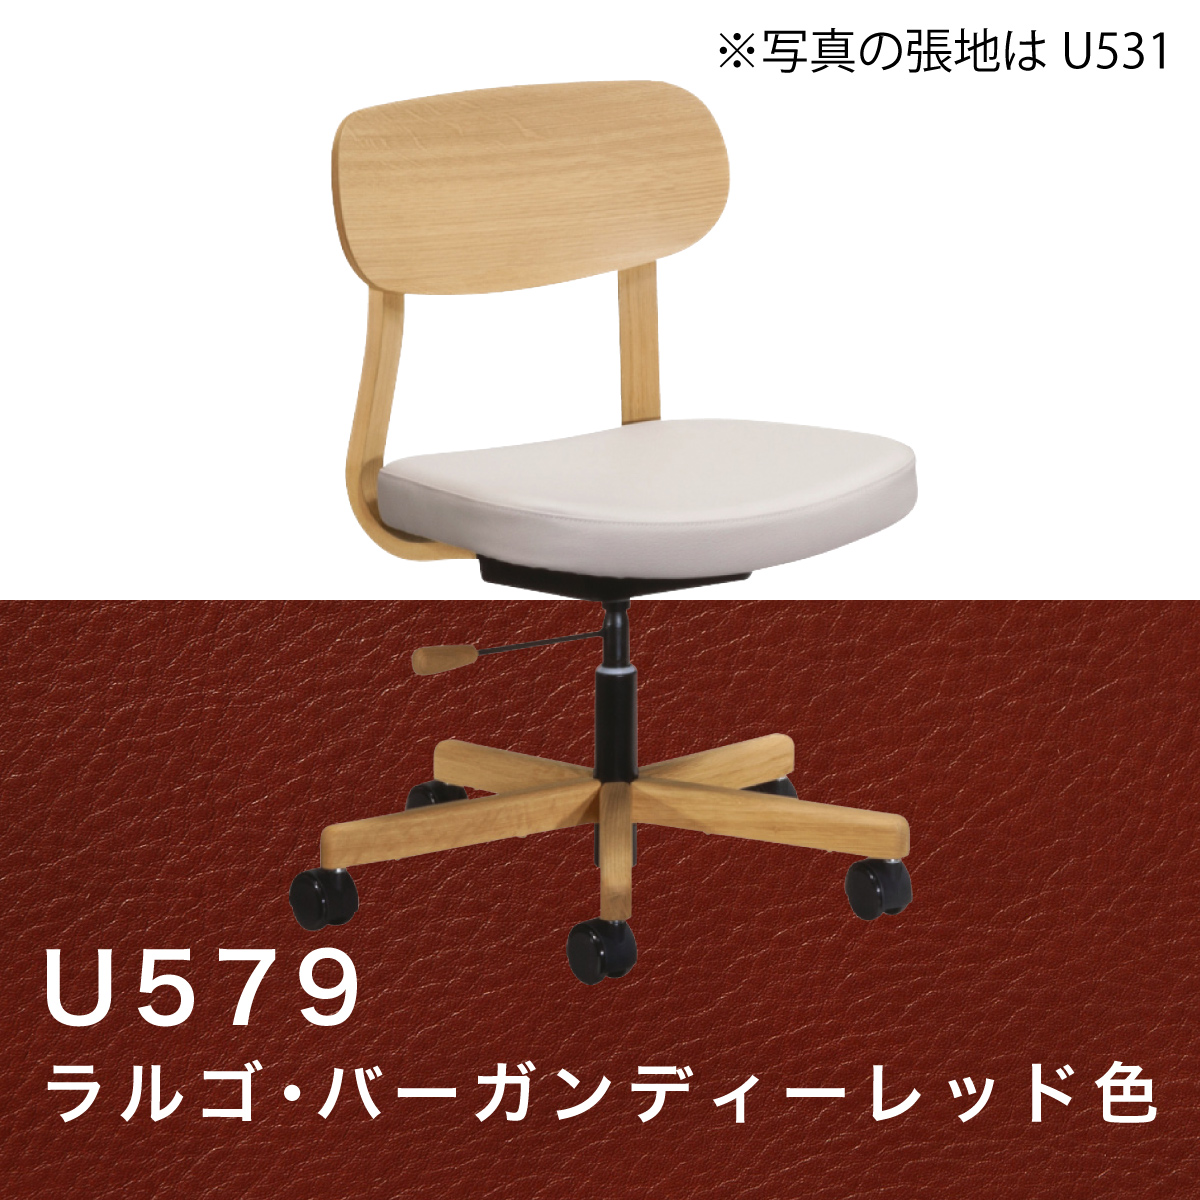 カリモク ワークチェア デスクチェア XW3301 オフィスチェア 木製 オーク材 合成皮革張り 疲れない 学習椅子 回転椅子 キャスター 国産  karimoku